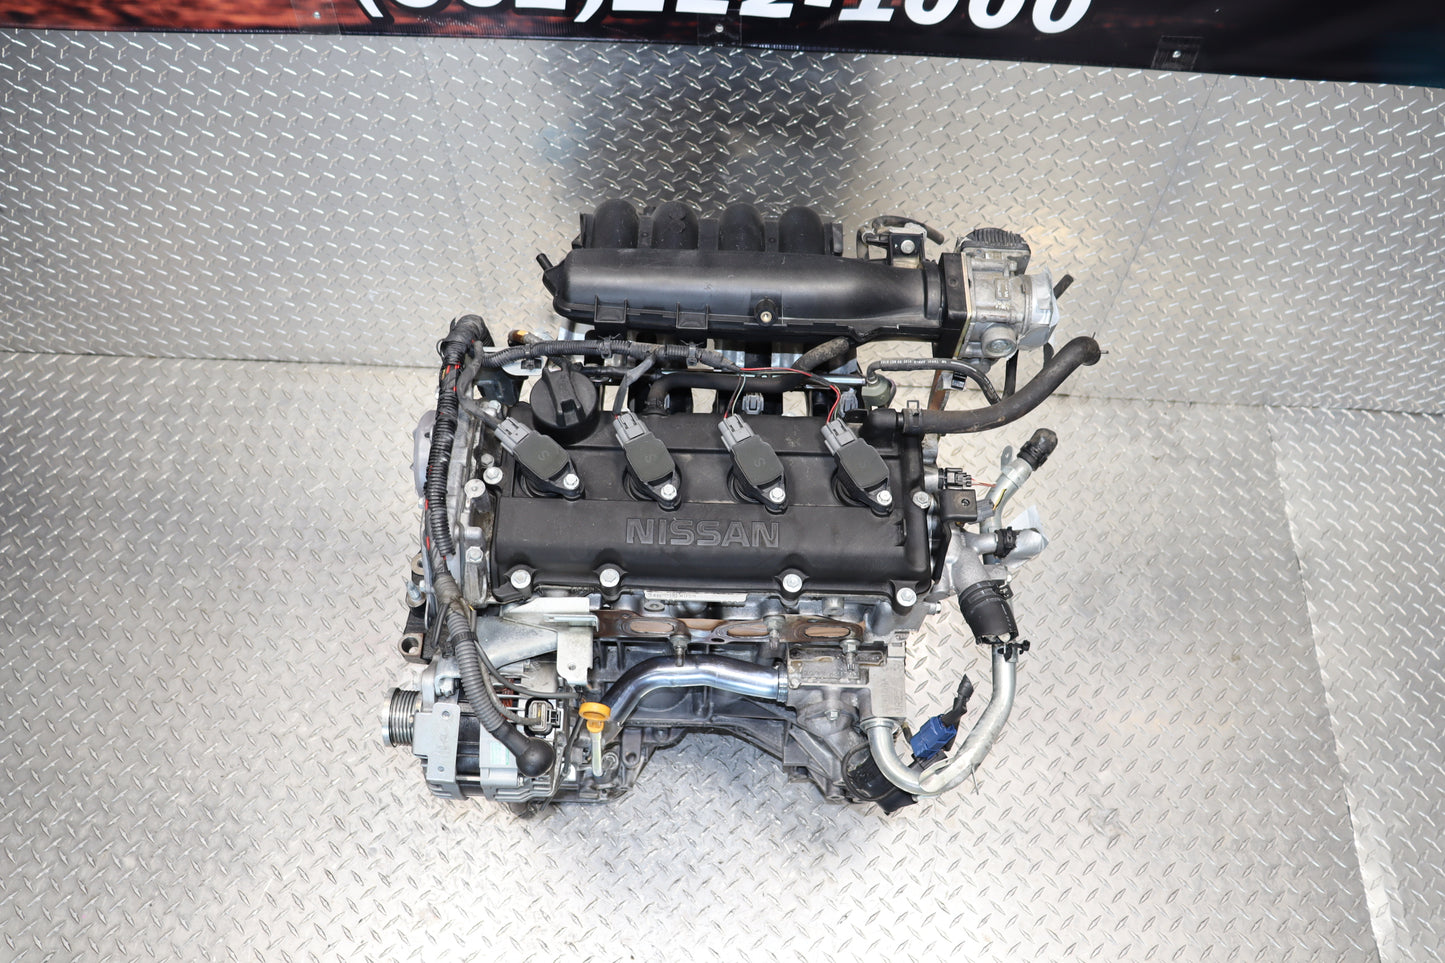 JDM QR25DE 02-06 Nissan Altima Engine 2.5L Sentra SE-R 4CYL